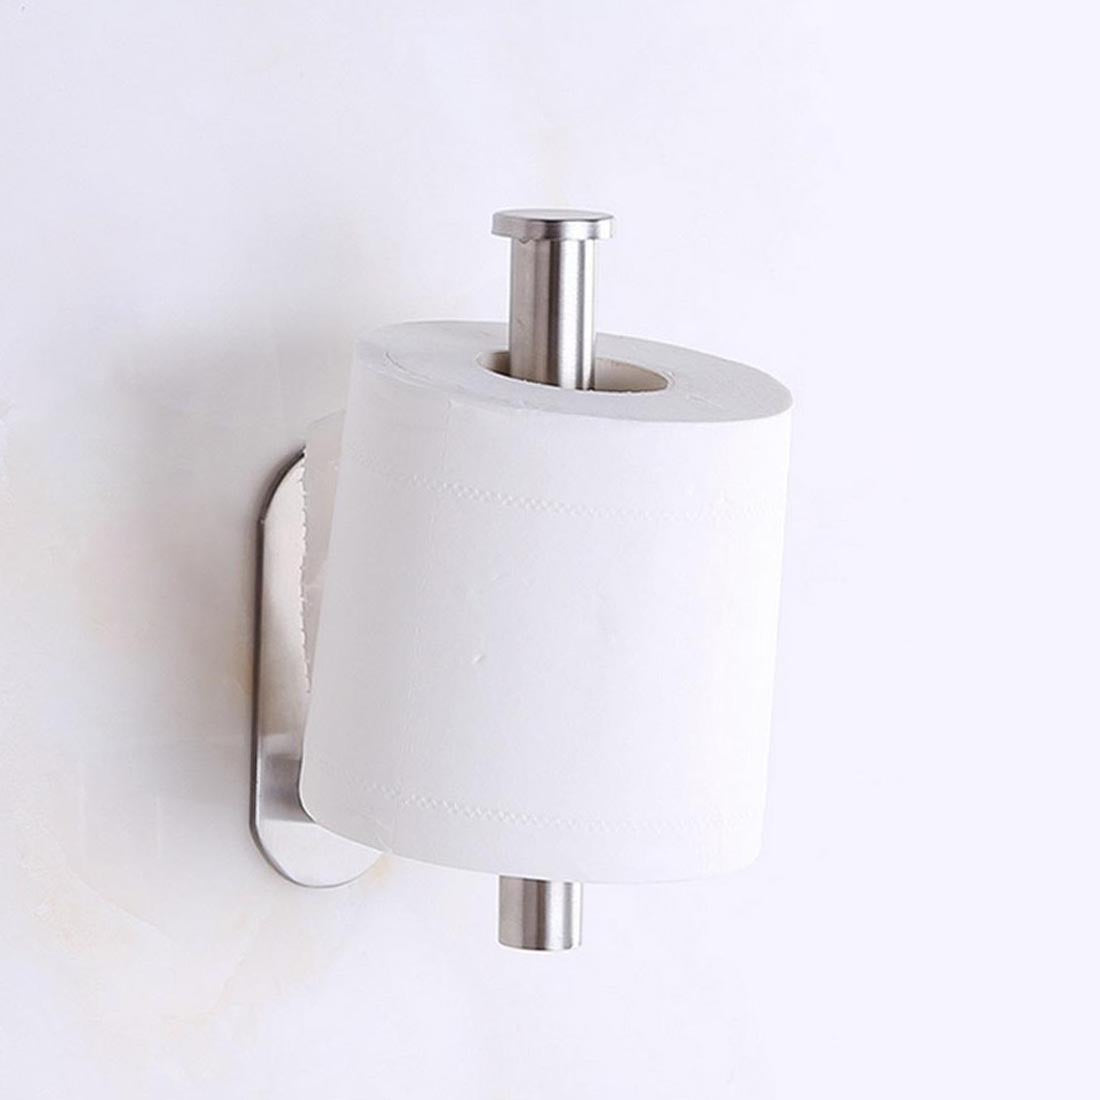 Stainless steel bathroom tissue holder